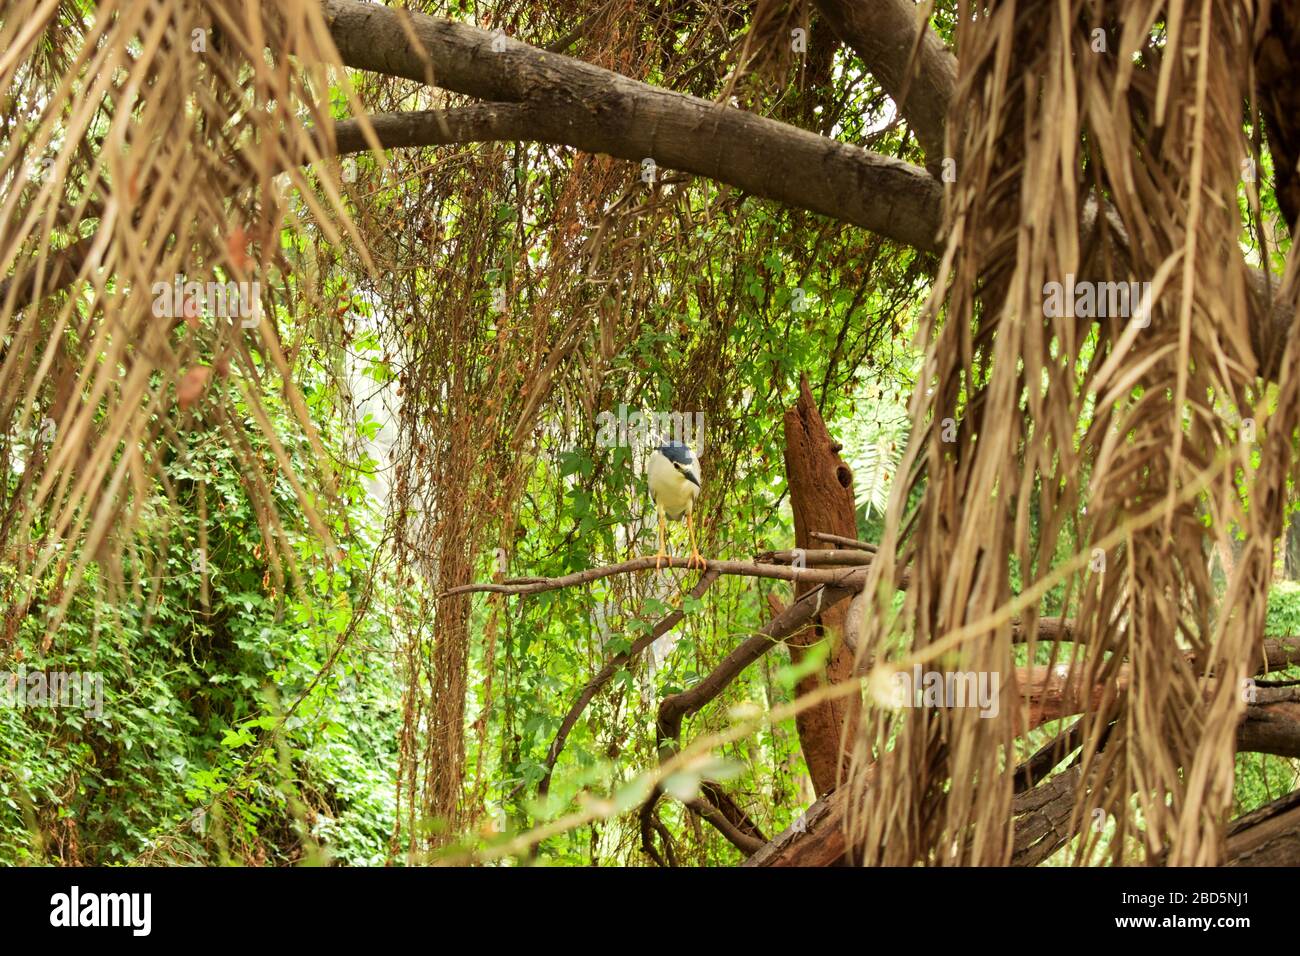 Forêt tropicale naturelle/jungle en Inde grandes branches d'arbres et branches d'arbres verdure photo du stock Banque D'Images